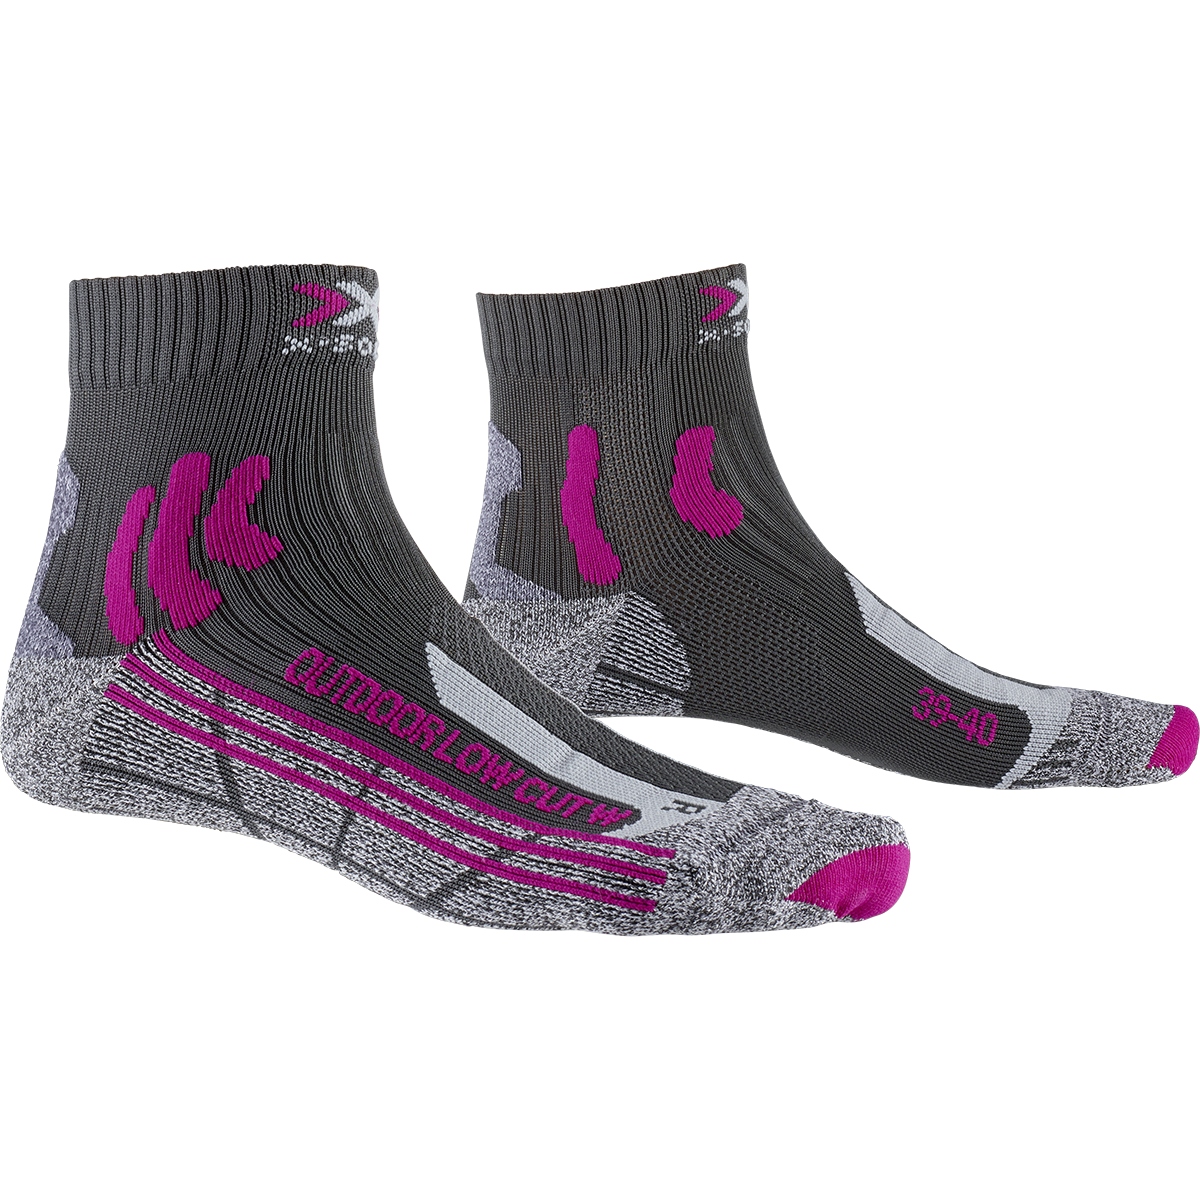 Produktbild von X-Socks Trek Outdoor Low Cut Socken für Damen - anthracite/fuchsia